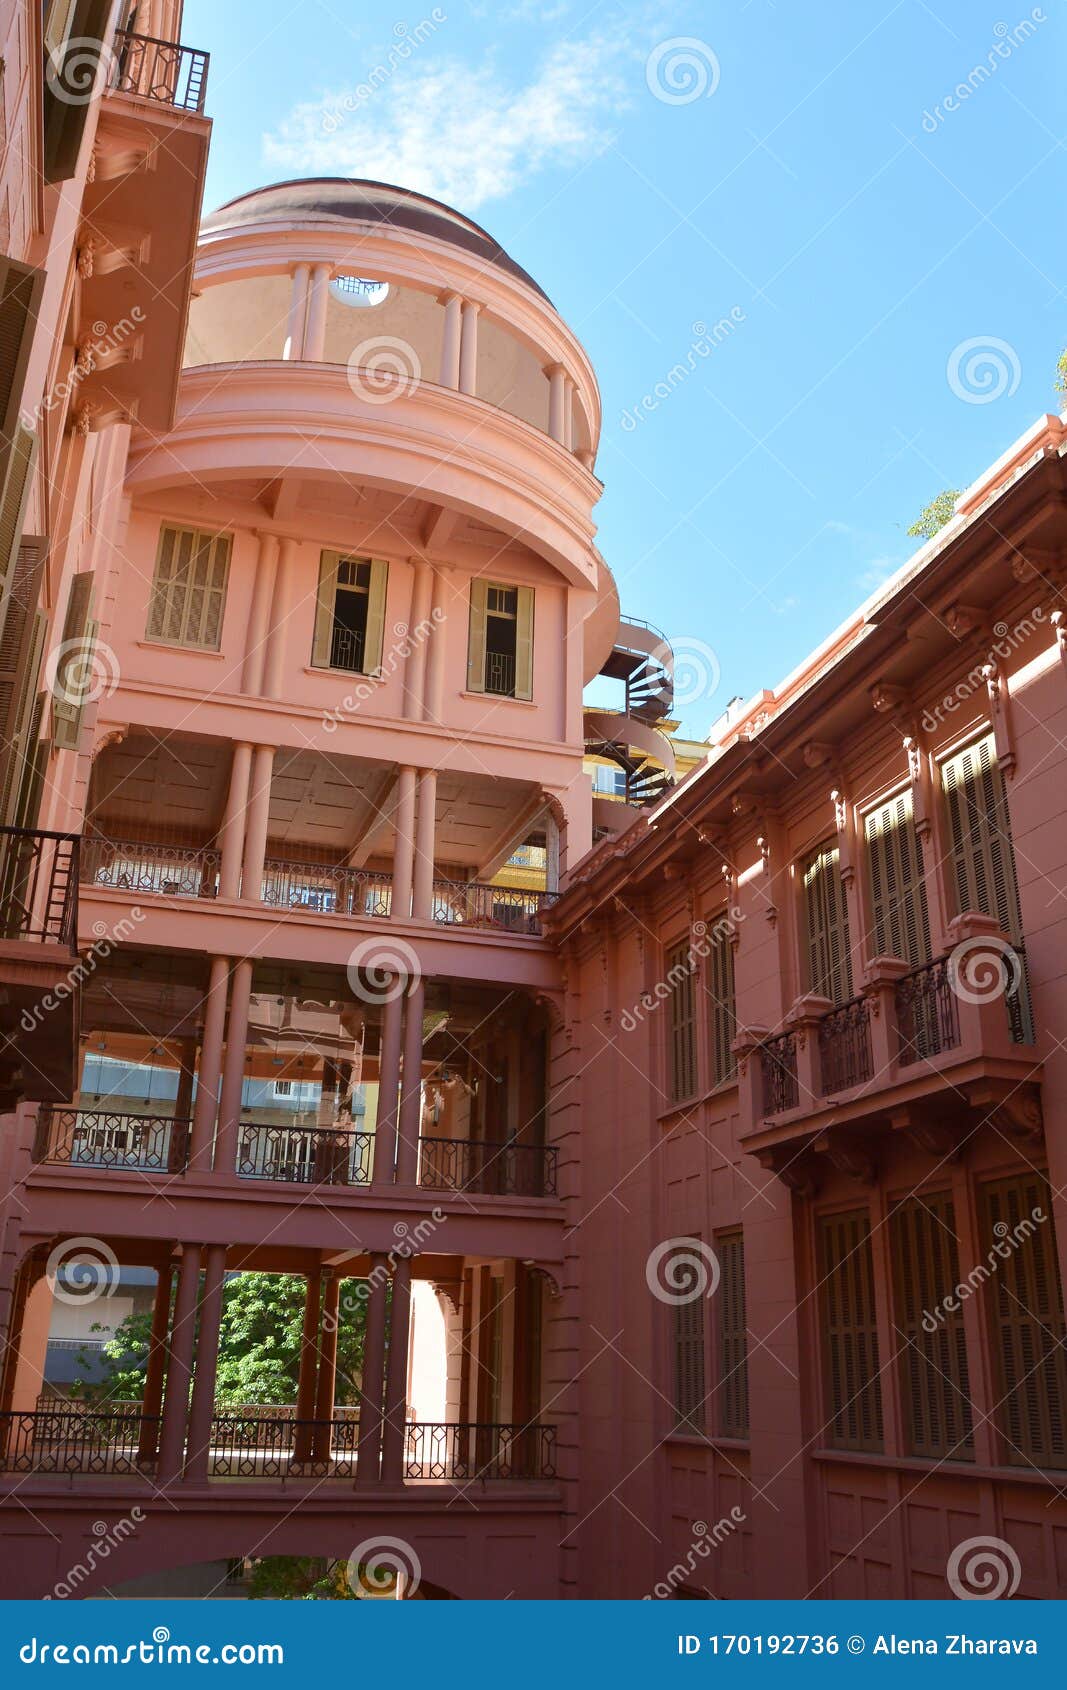 the casa de cultura mario quintana ccmq - mario quintana house of culture, originally hotel majestic. porto alegre